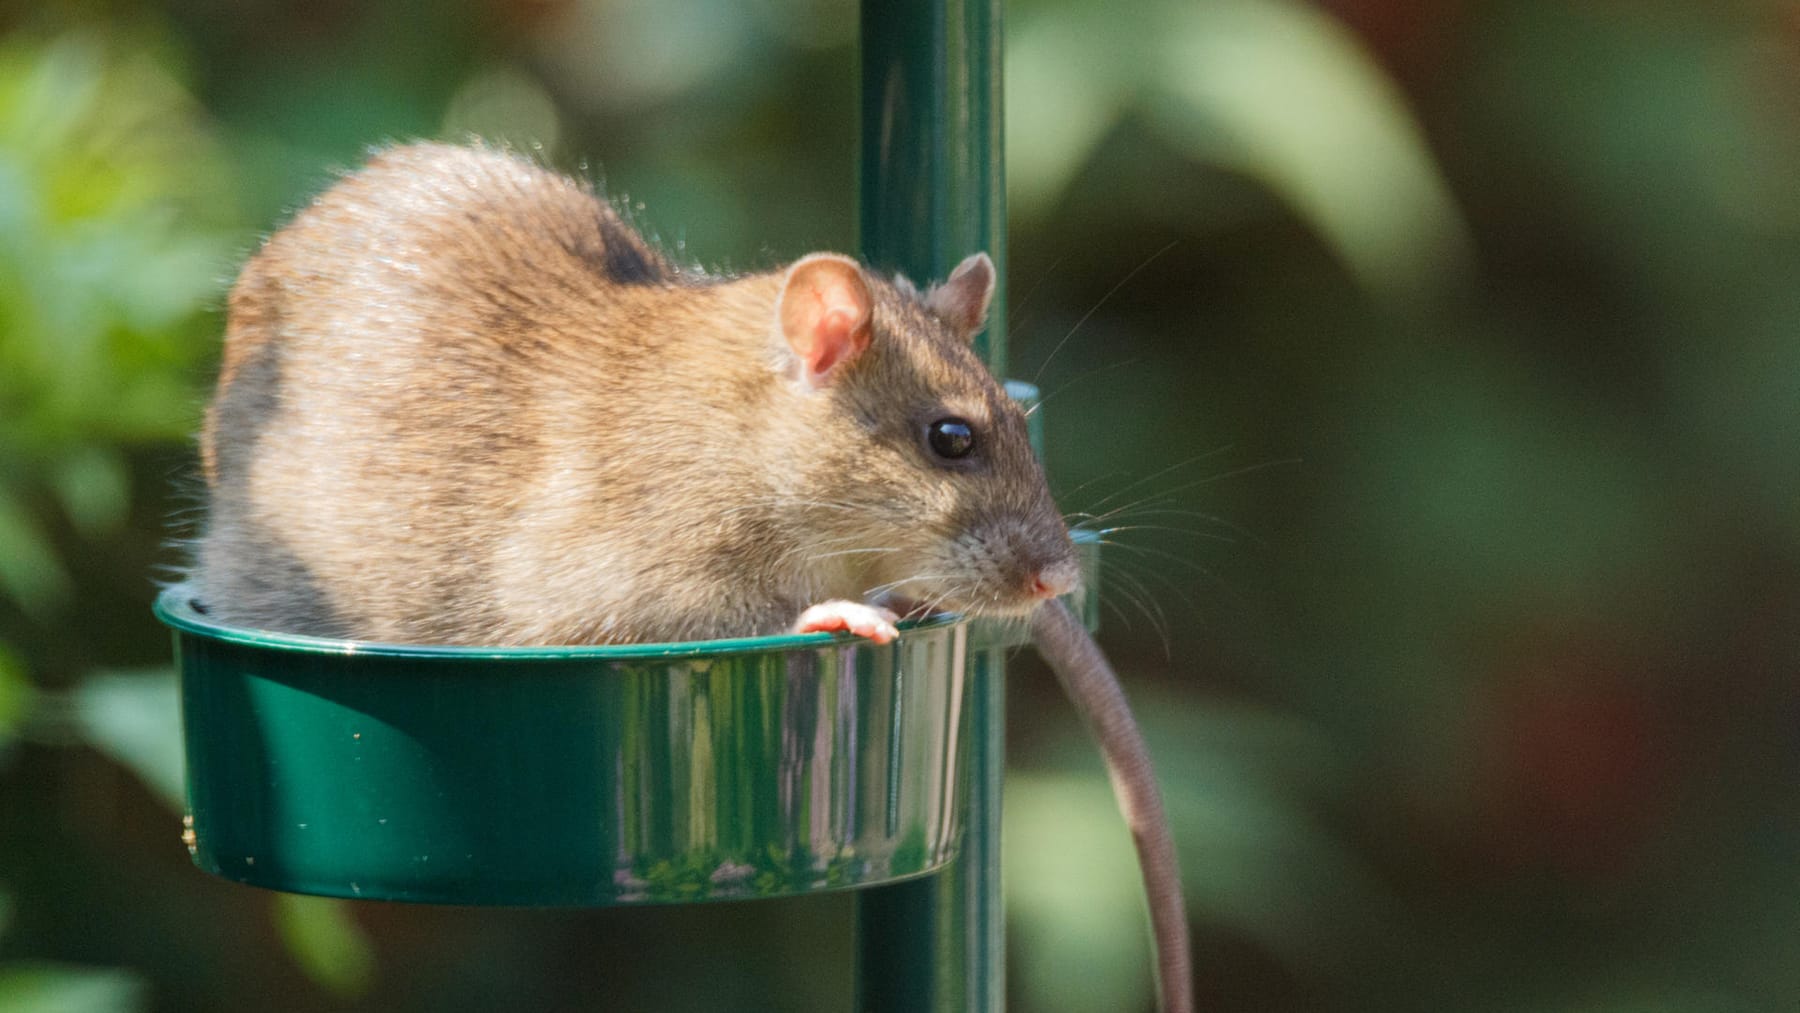 Ratten im Garten: Das können Sie dagegen tun